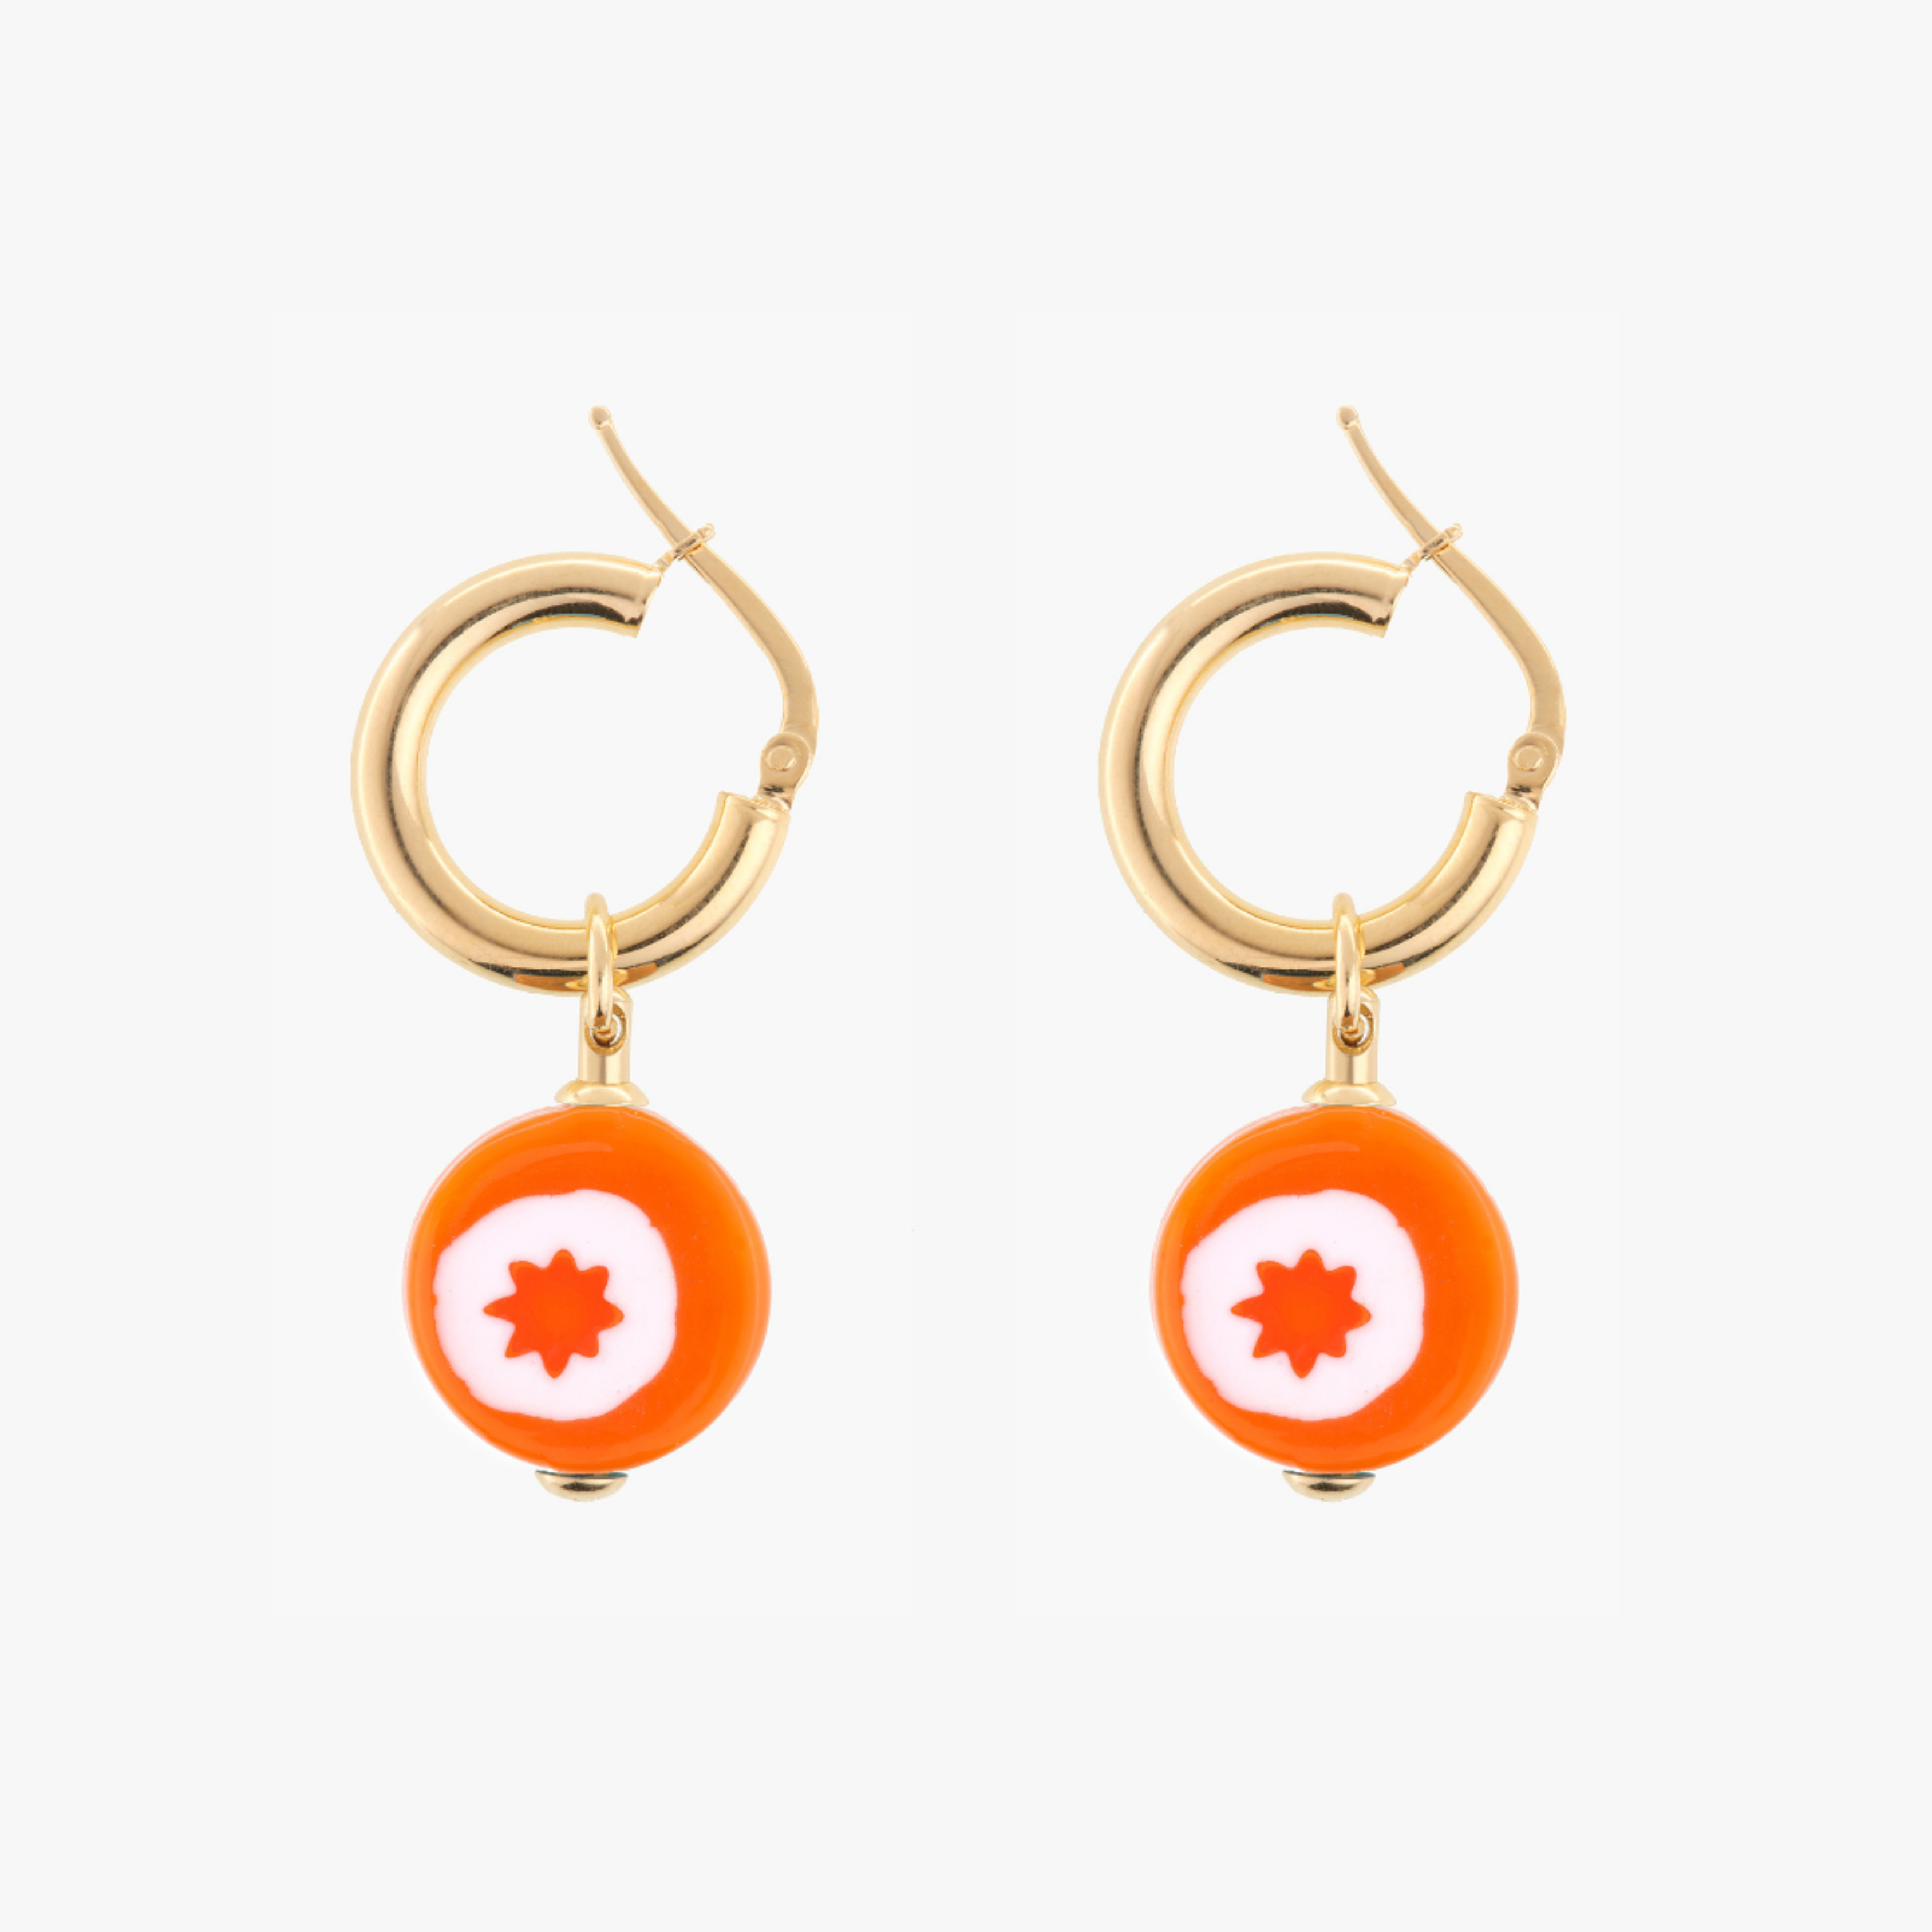 SCHIONA EARRINGS - Orange Star